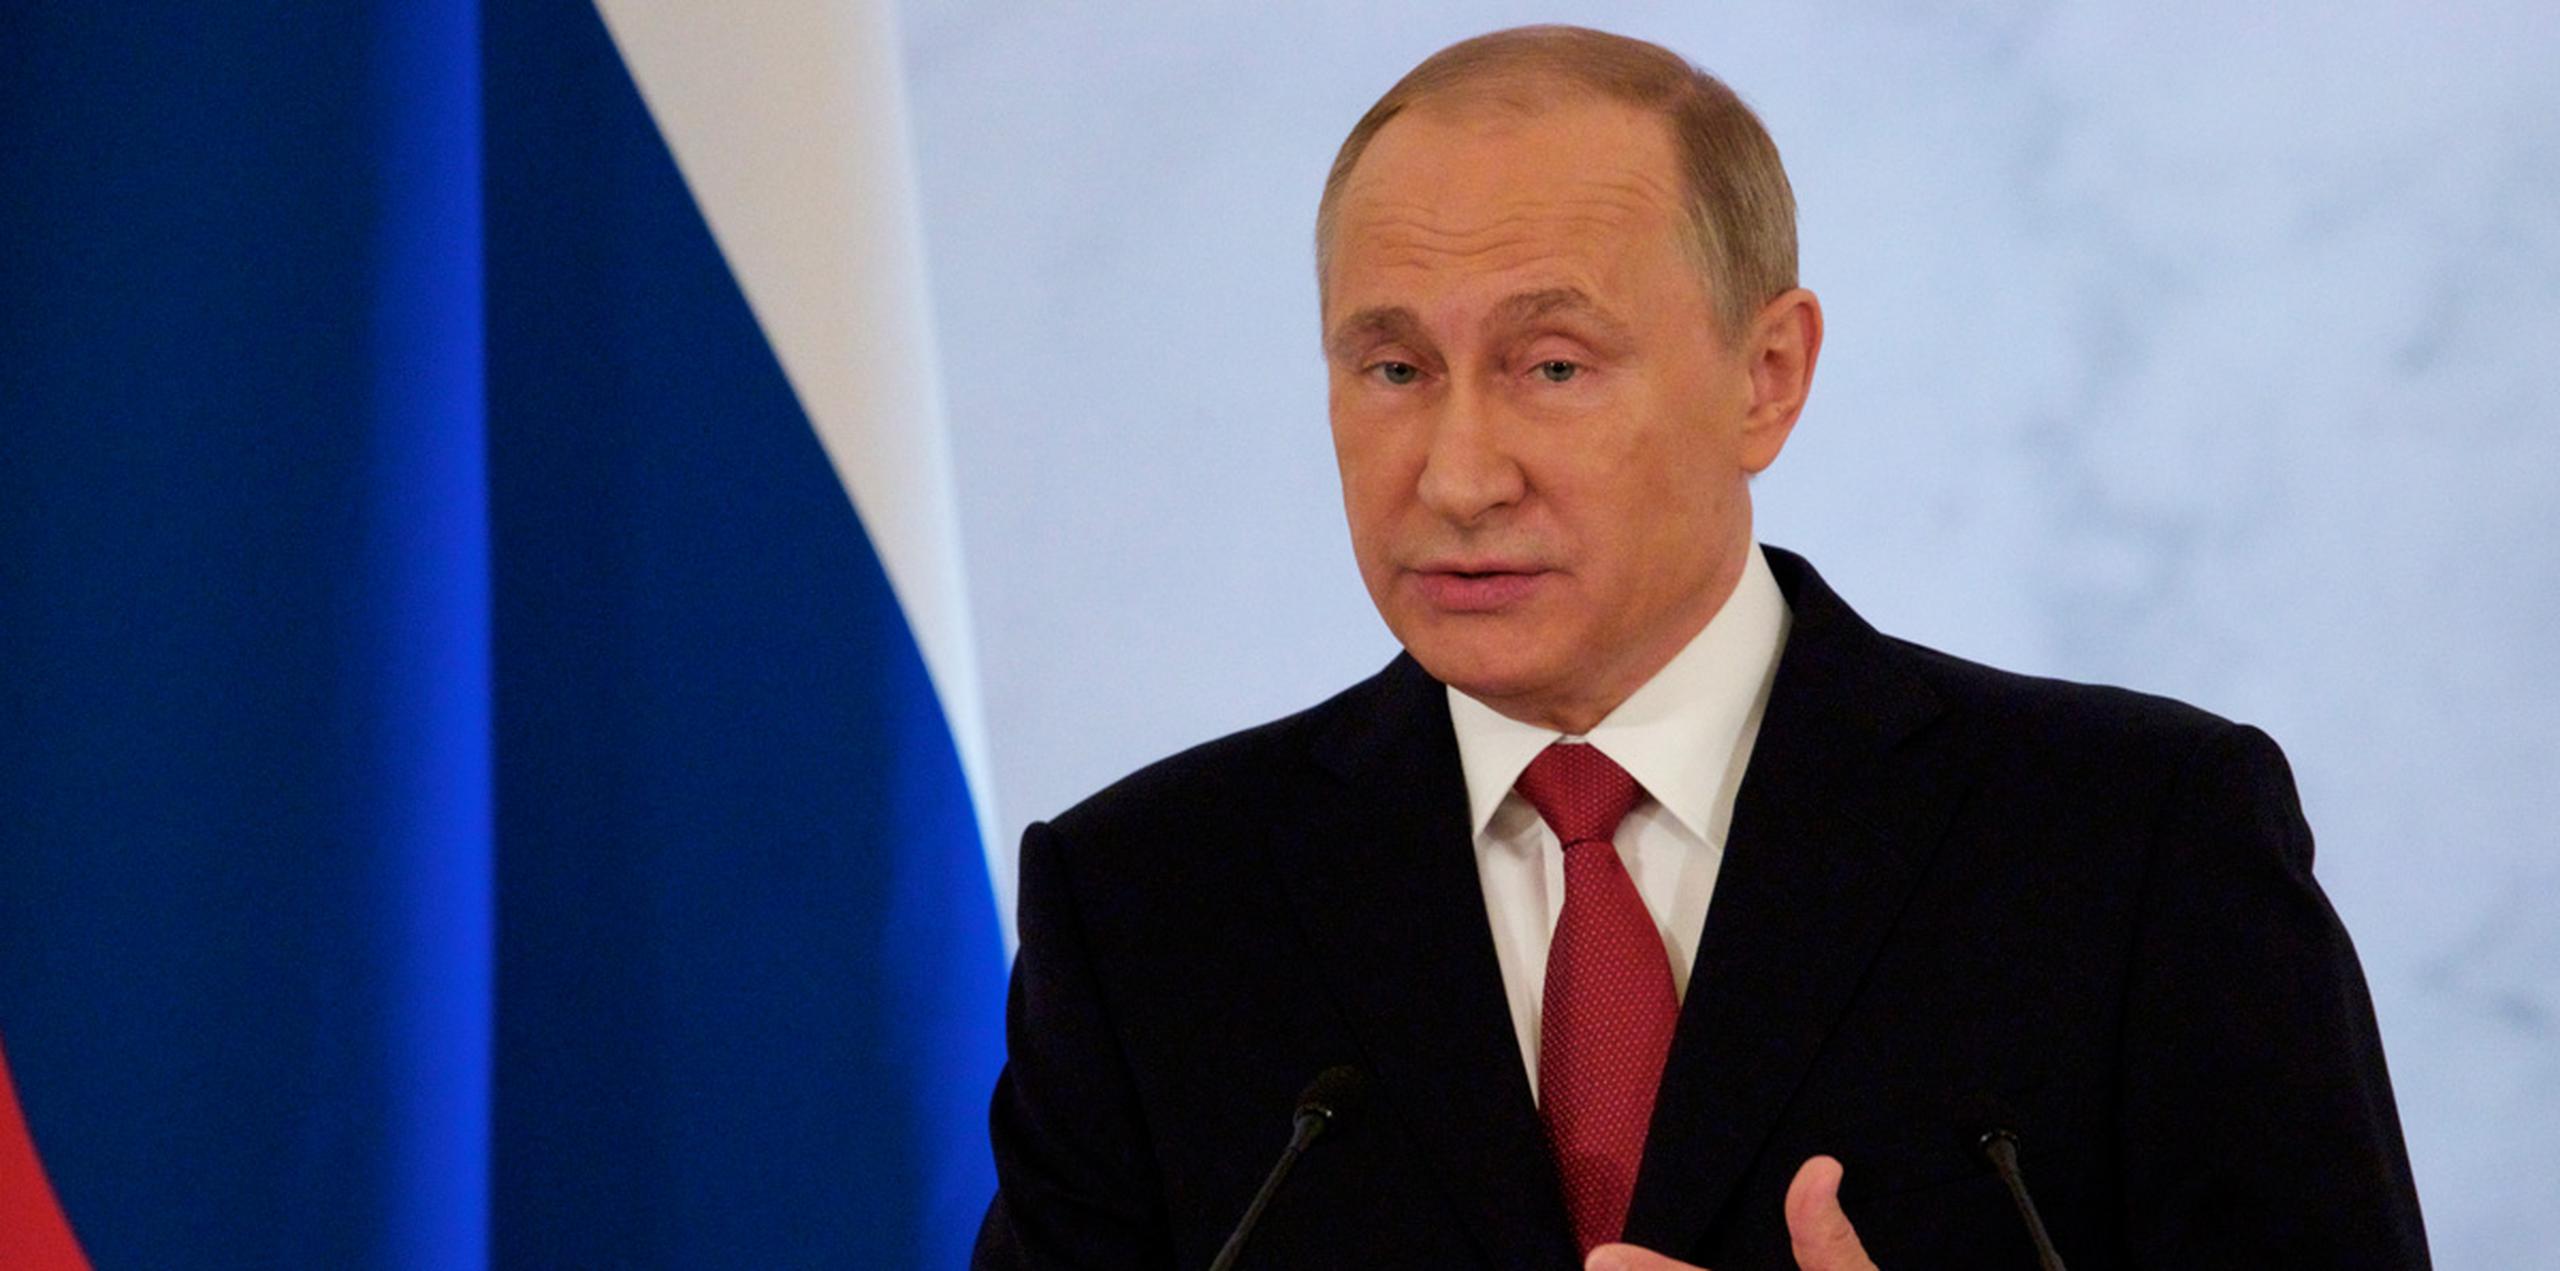 "Tenemos una responsabilidad común a la hora de garantizar la seguridad y la estabilidad internacional, y fortalecer el régimen de no proliferación", señaló Putin. (AP)